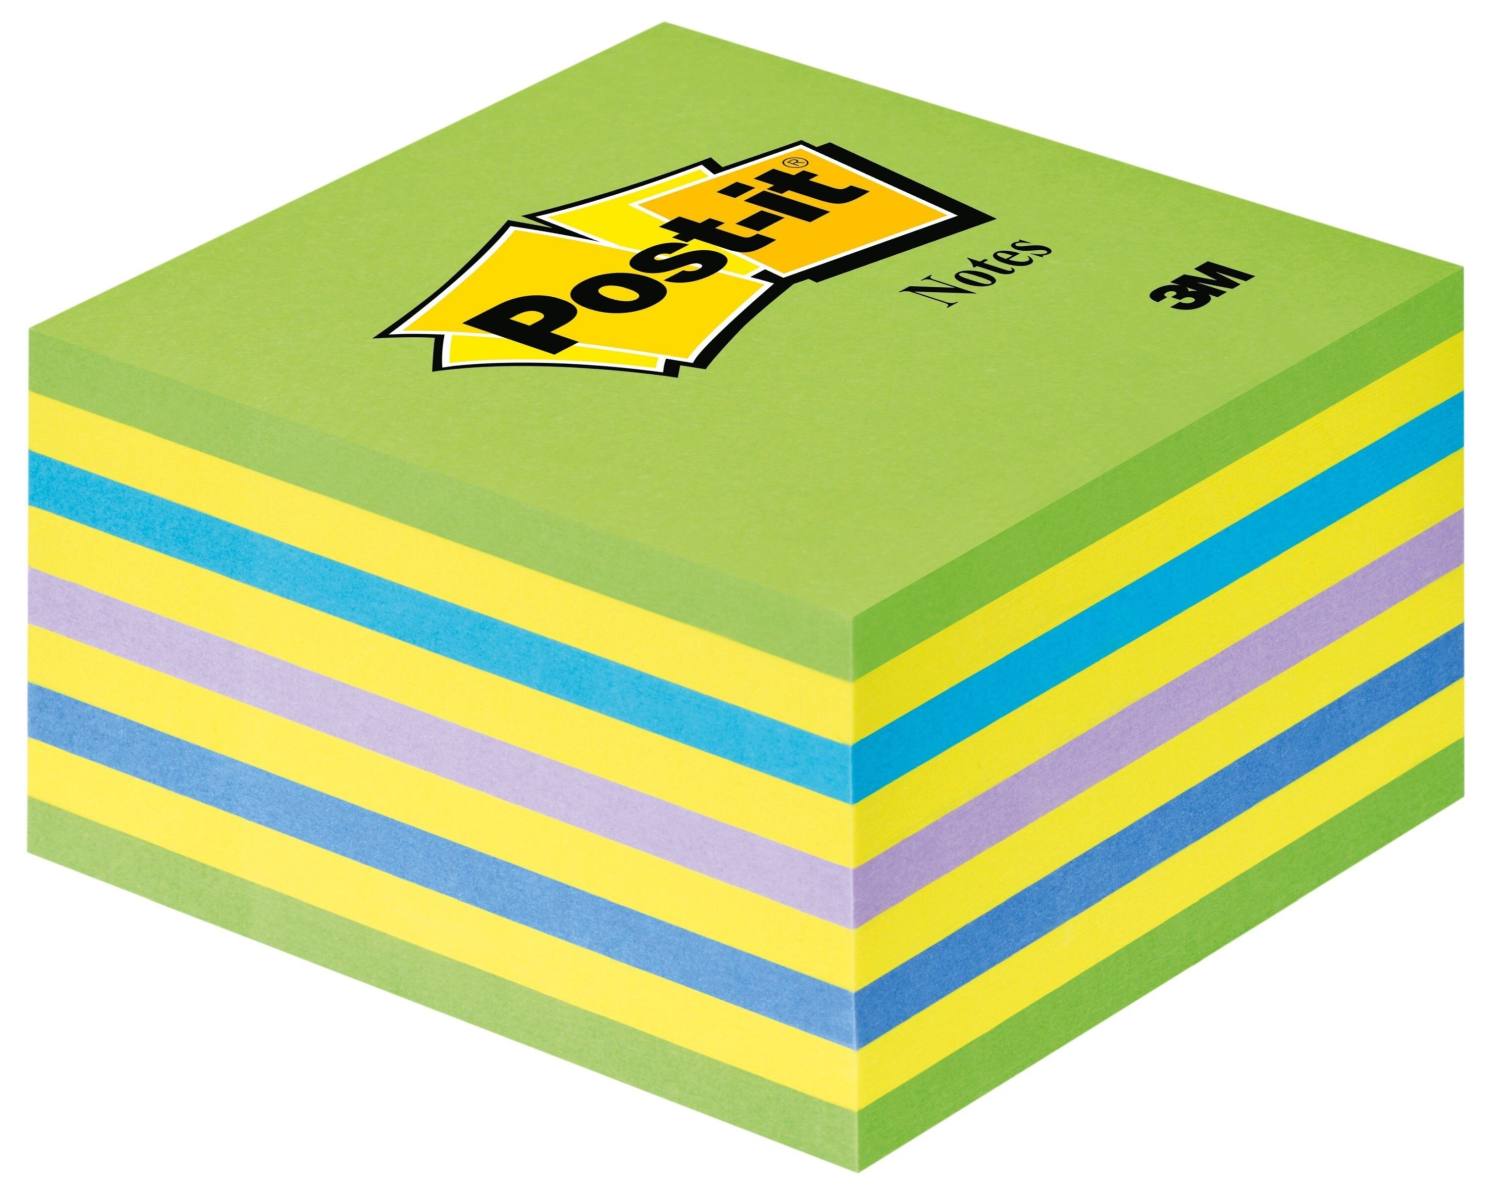 3M Post-it Würfel 2028NB, 76 mm x 76 mm, gelb, neonblau, neongrün, 1 Würfel à 450 Blatt